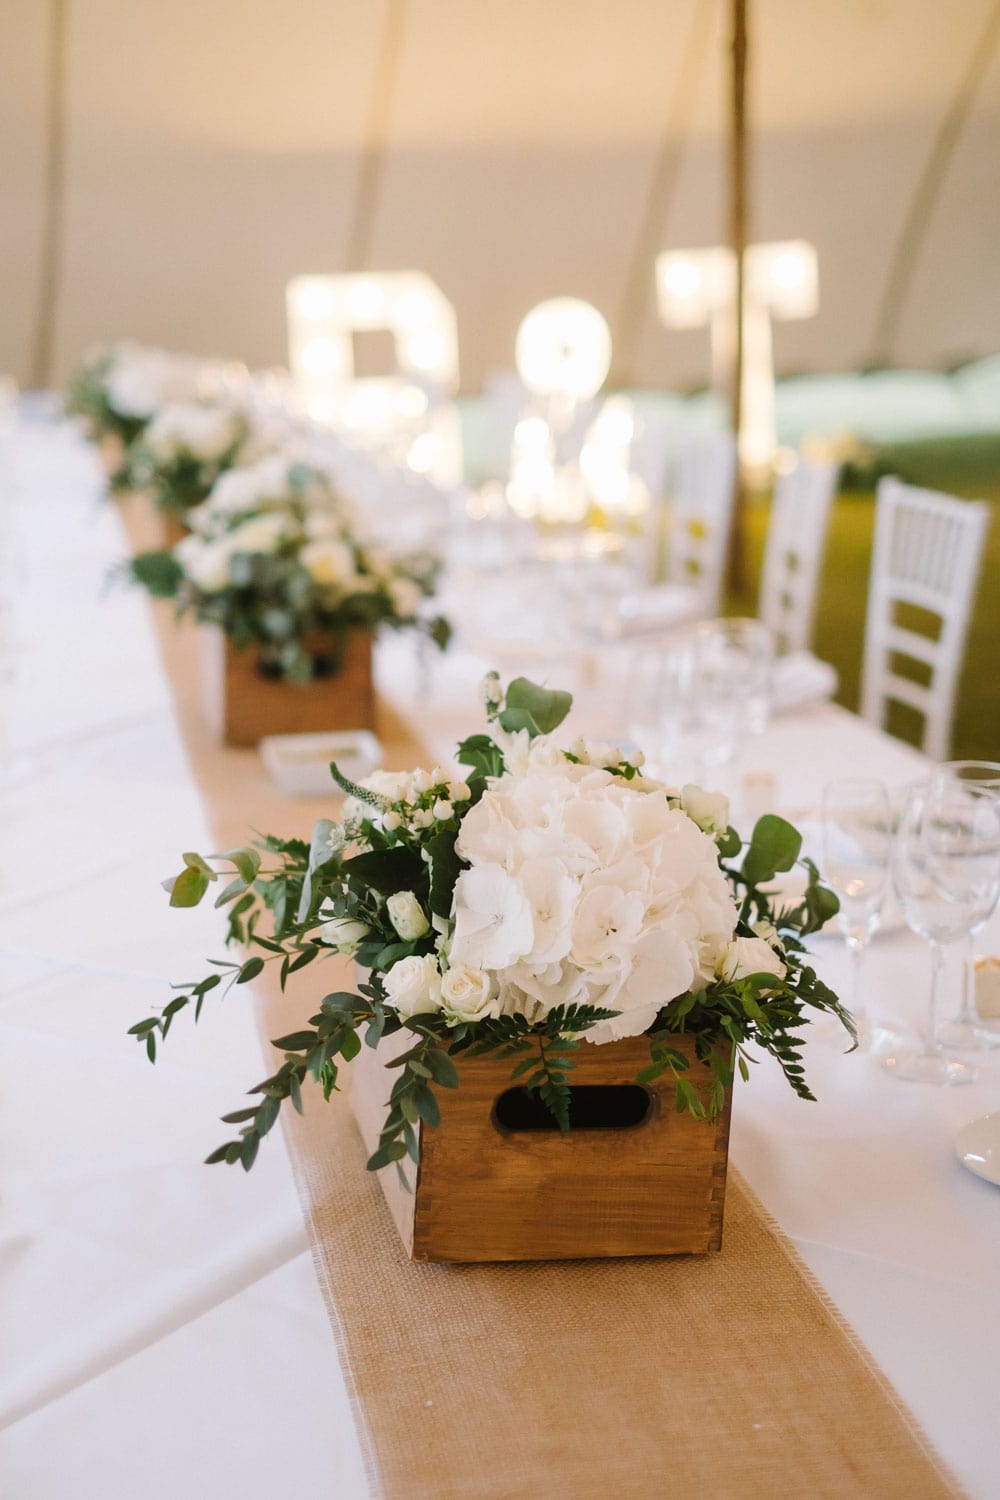 natural wedding flowersboho wedding #naturalflowers #britishroses #whiteroses #olivedecoration #rusticwedding #bohowedding #rondamountainresort jesuscaballero.com